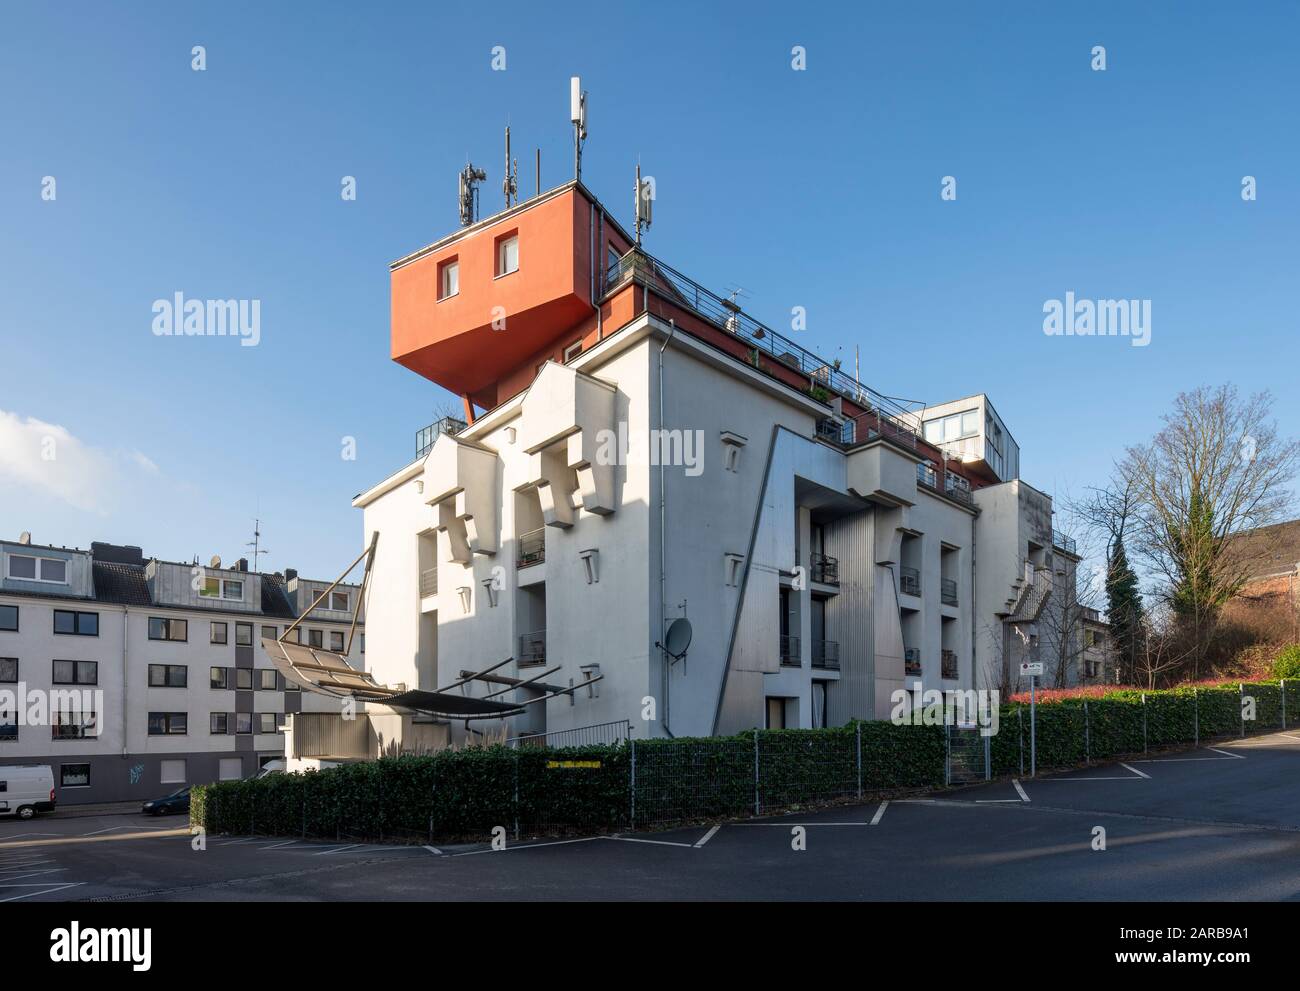 Aachen, Kongressstraße, Umgebauter Hochbunker, Baujahr 1940er Jahre, dekonstruktivistisch umgebaut zu Wohnungen 1992 von Gruhl & Partner Architekten Stock Photo